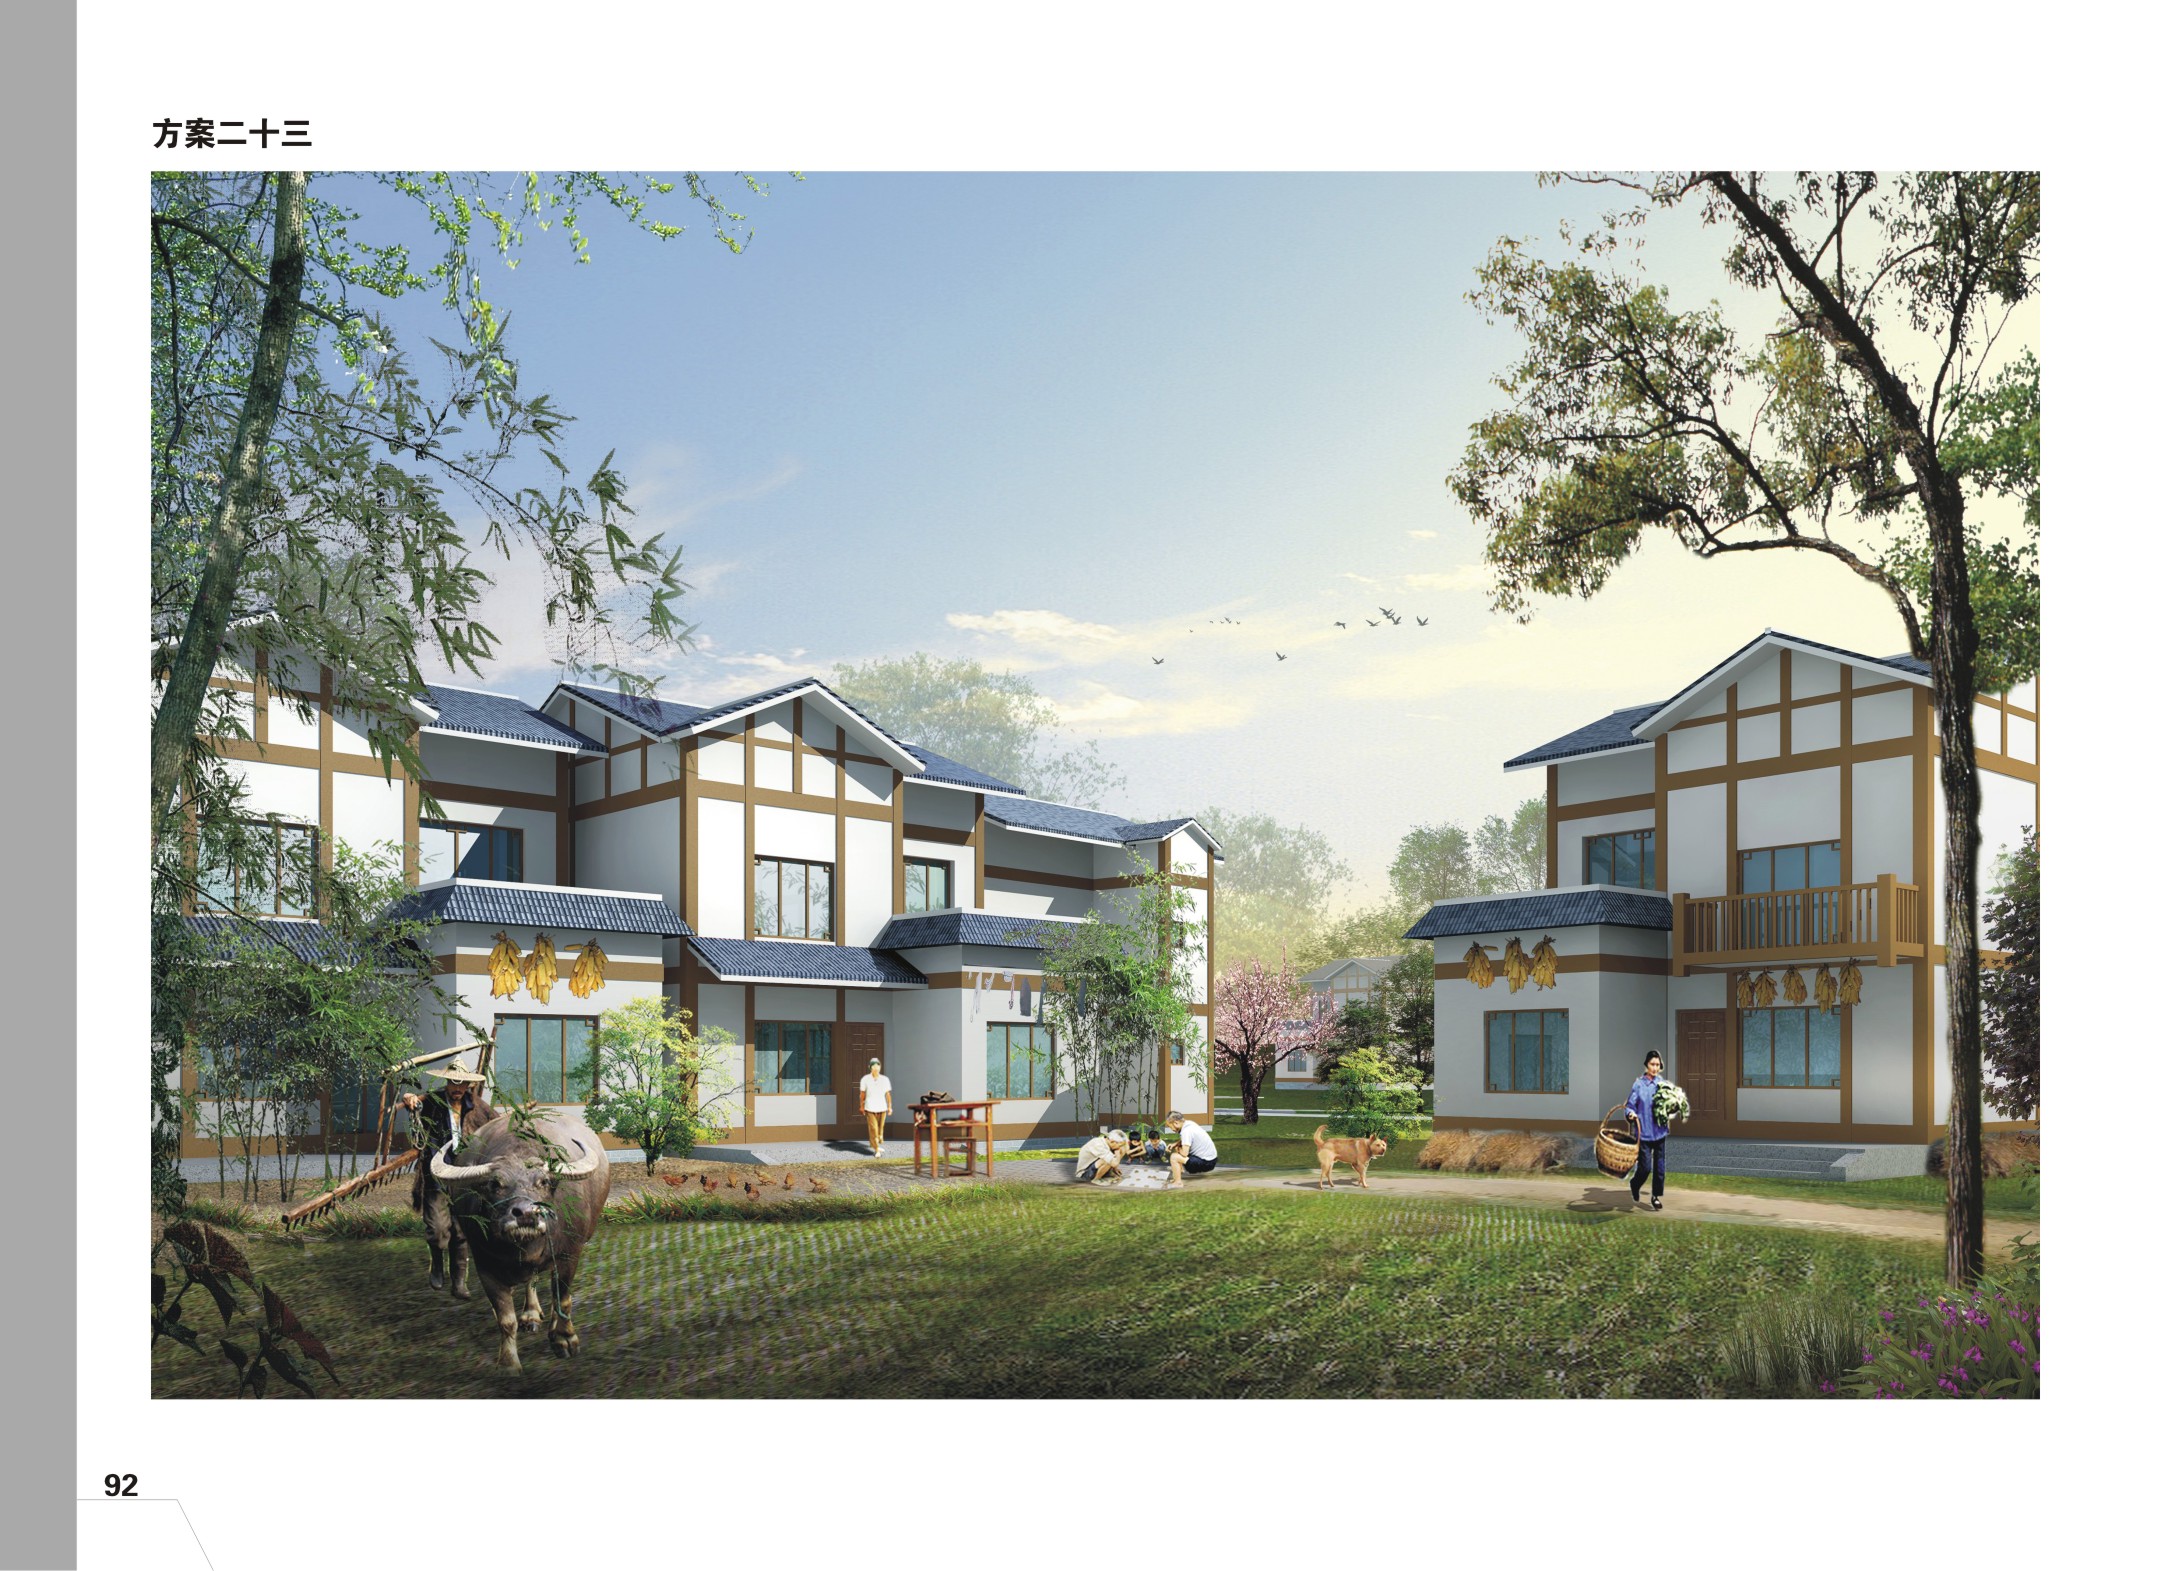 138平方米砖混结构川西农村风格住宅设计cad图